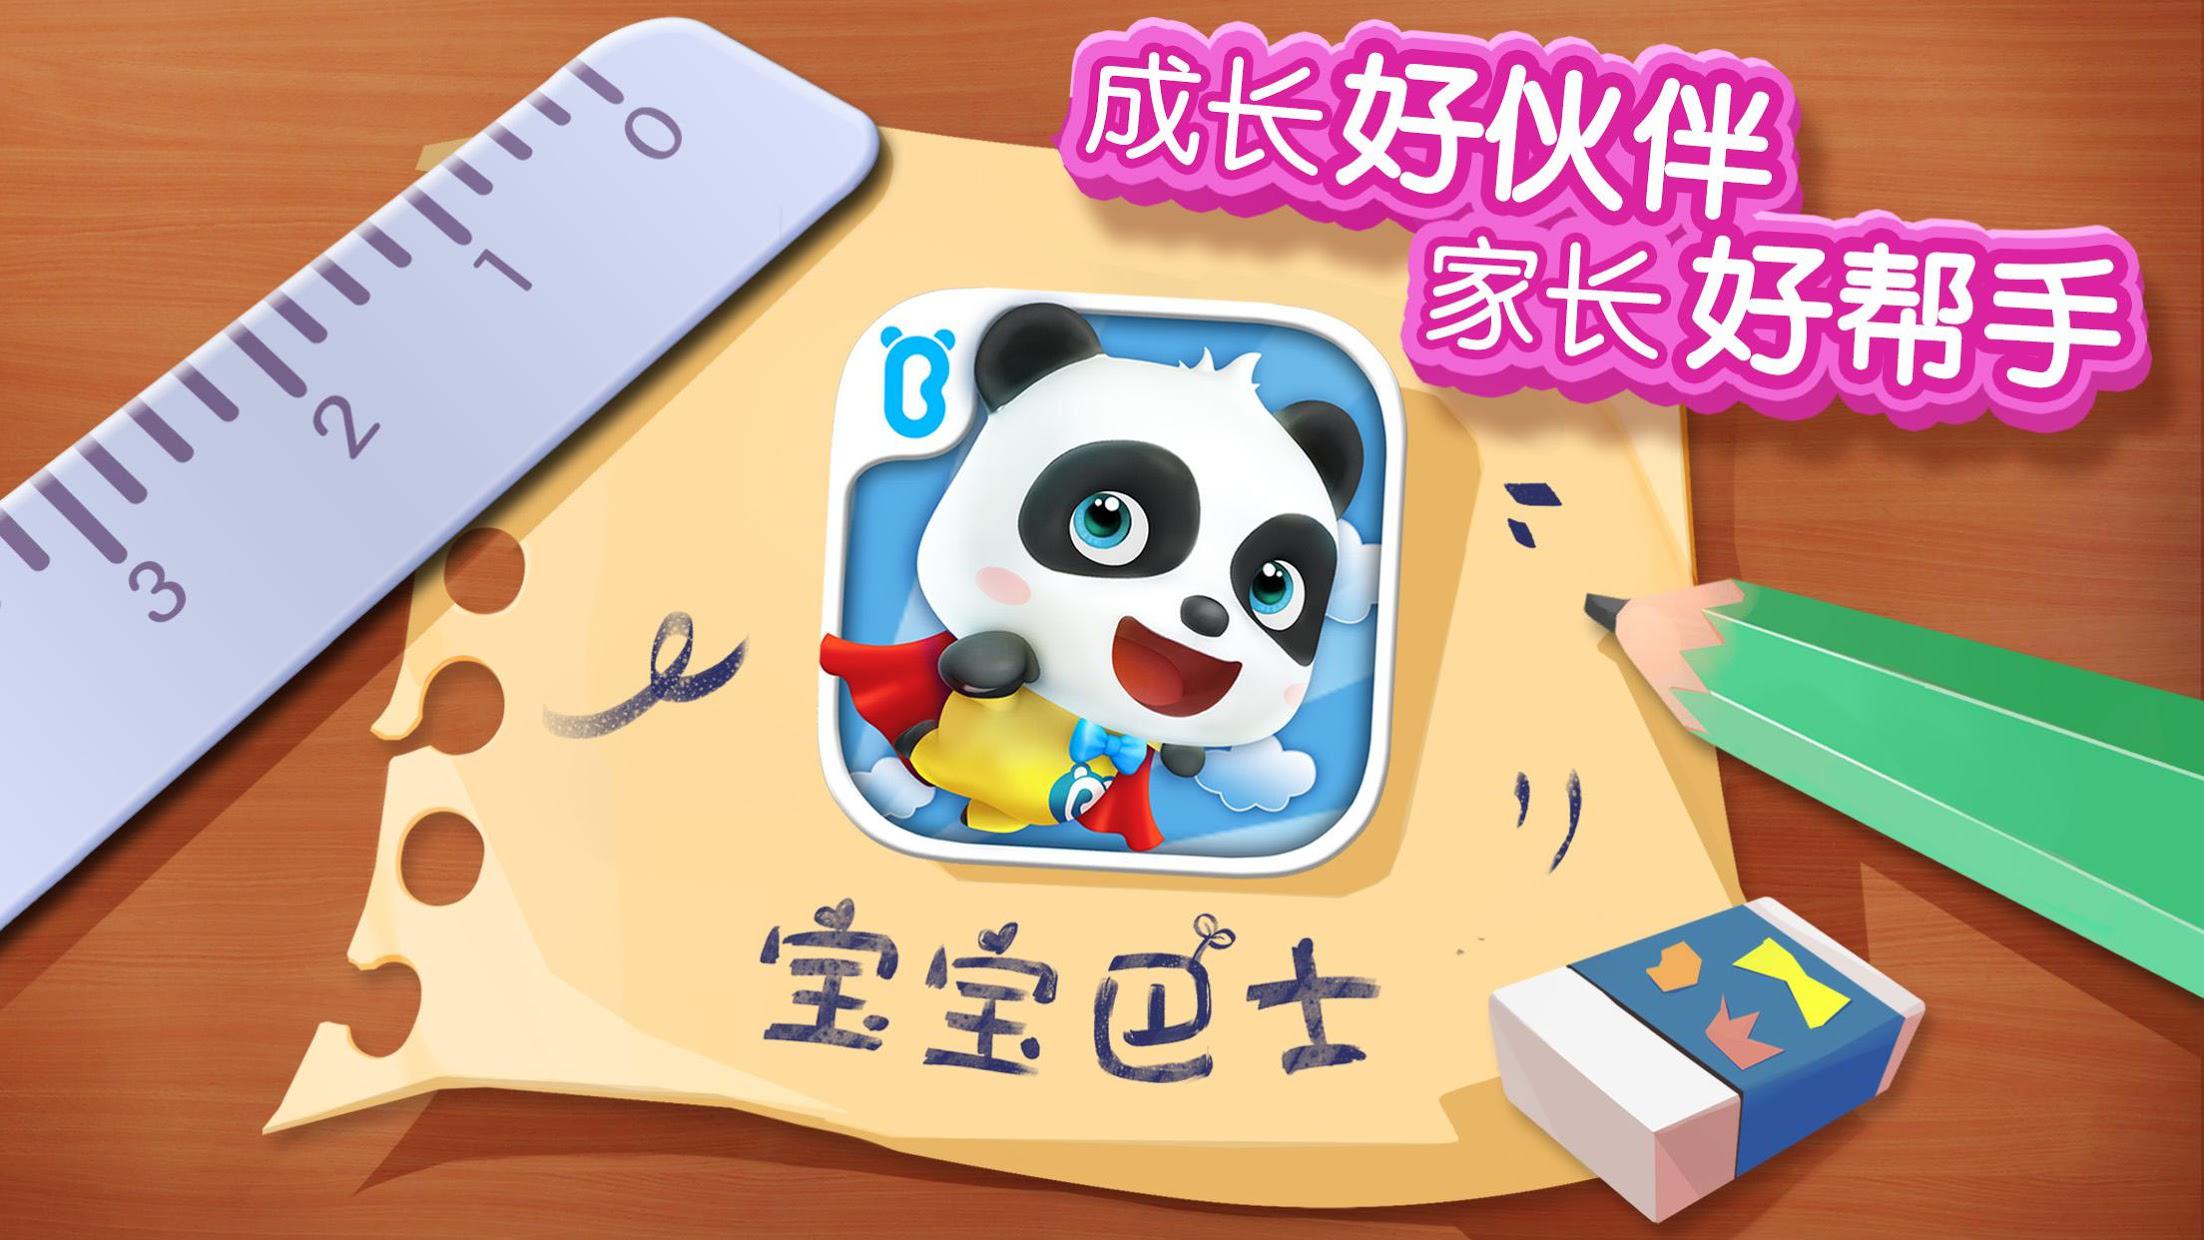 熊猫宝宝拼图游戏 - 幼儿教育游戏_截图_6